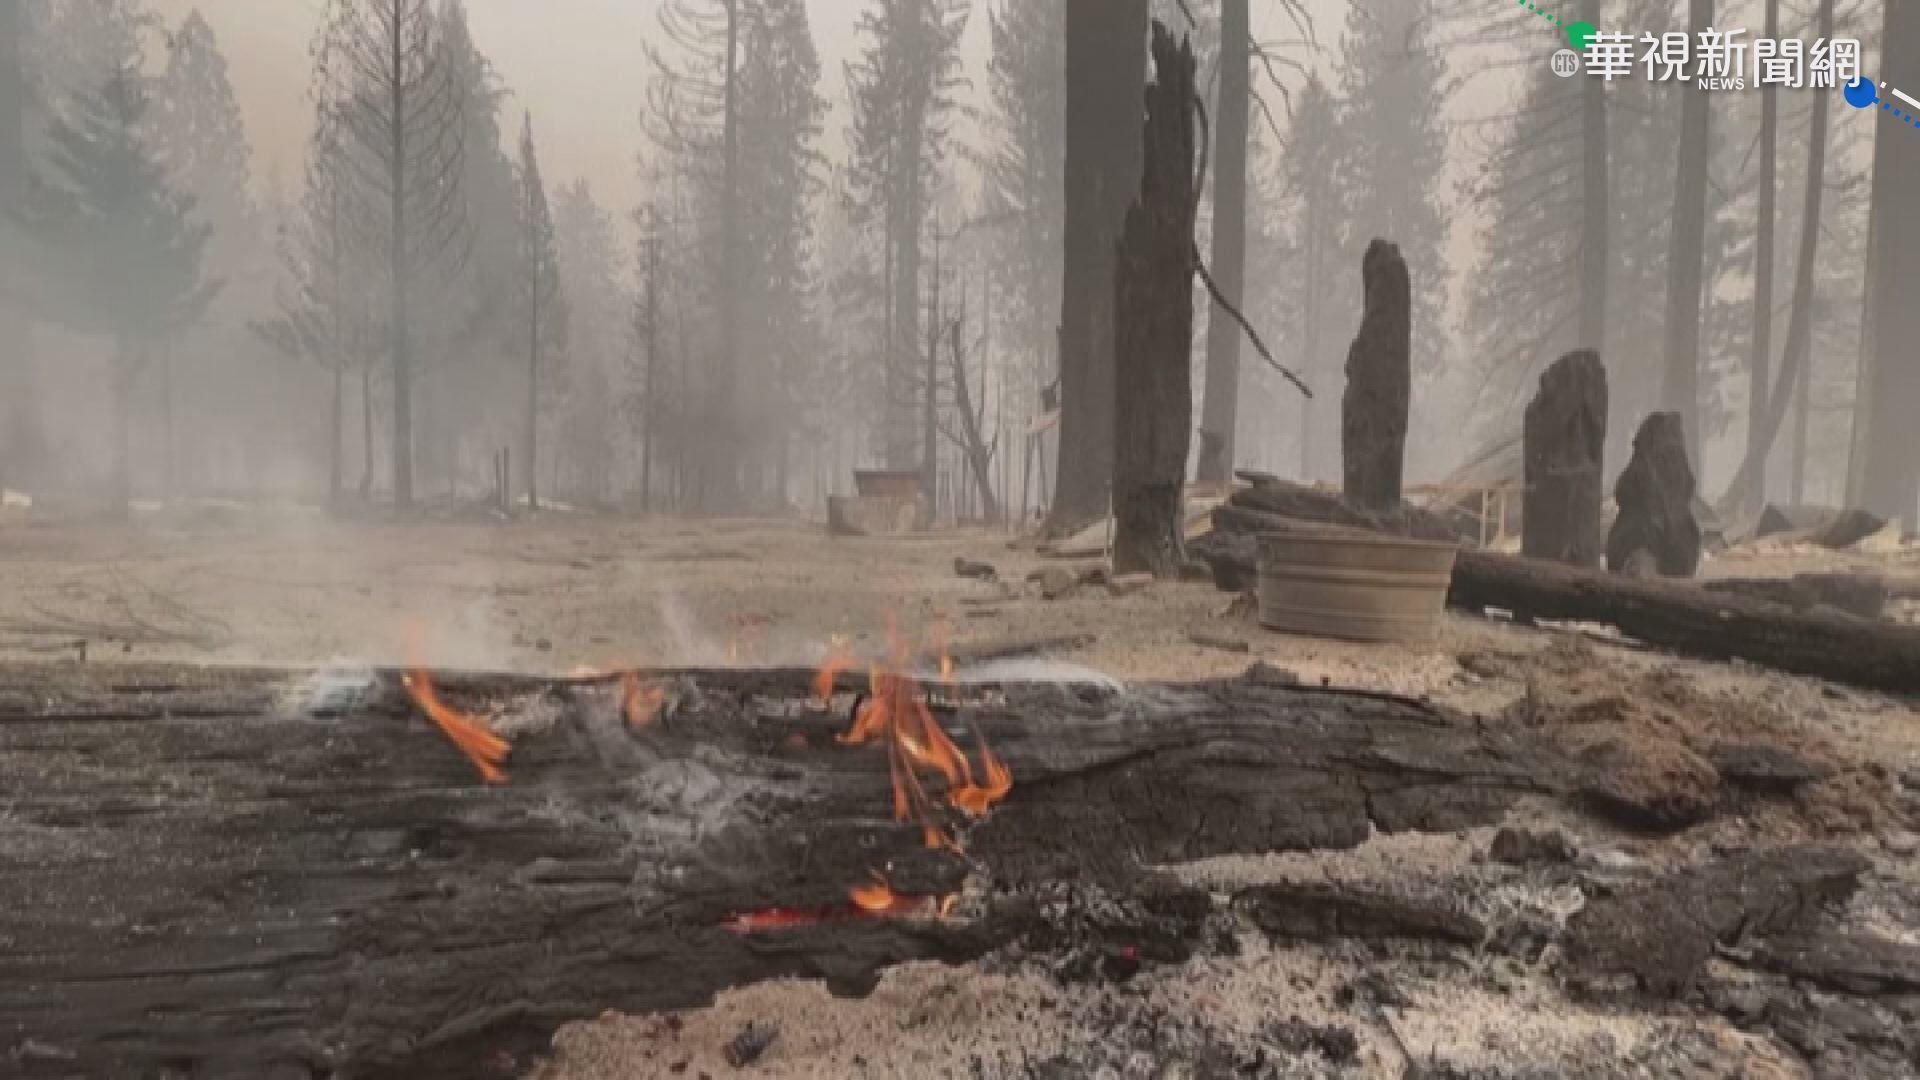 加州史上第三大野火 淘金名鎮燒成鬼城